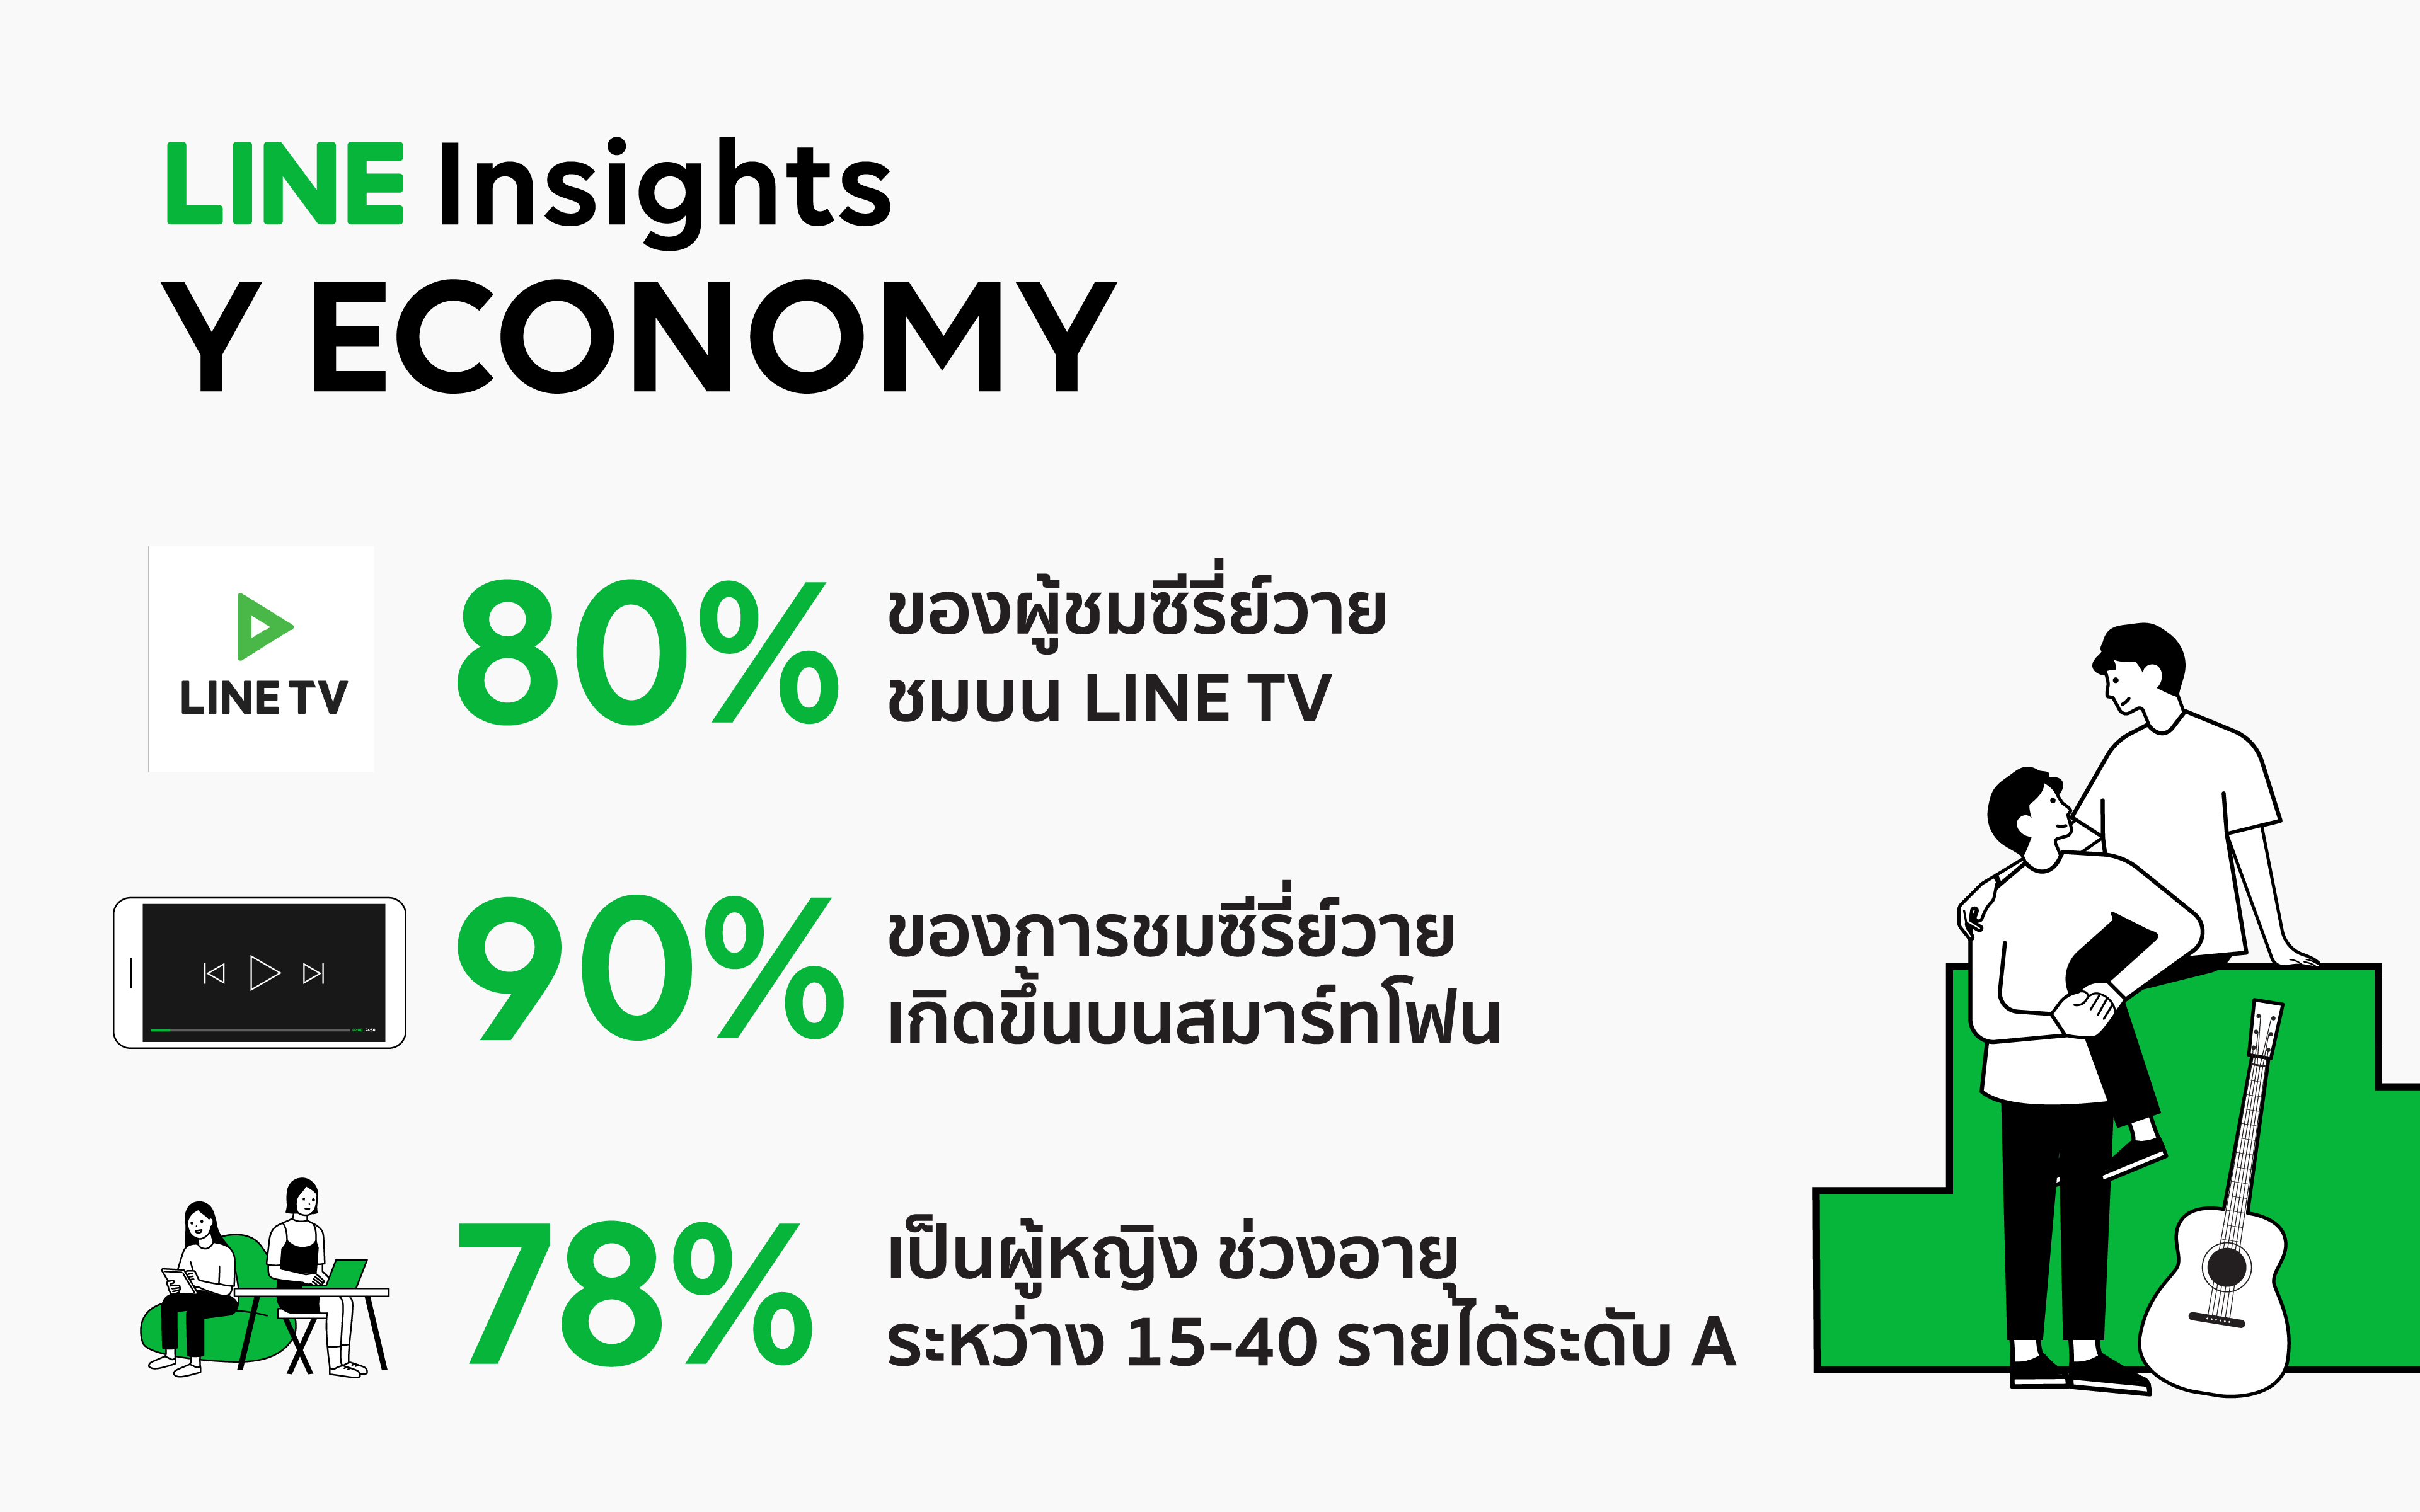 LINE Insights ชี้เศรษฐกิจใหม่ หัวใจ “Y” โอกาสครองใจผู้บริโภคยุค 2020